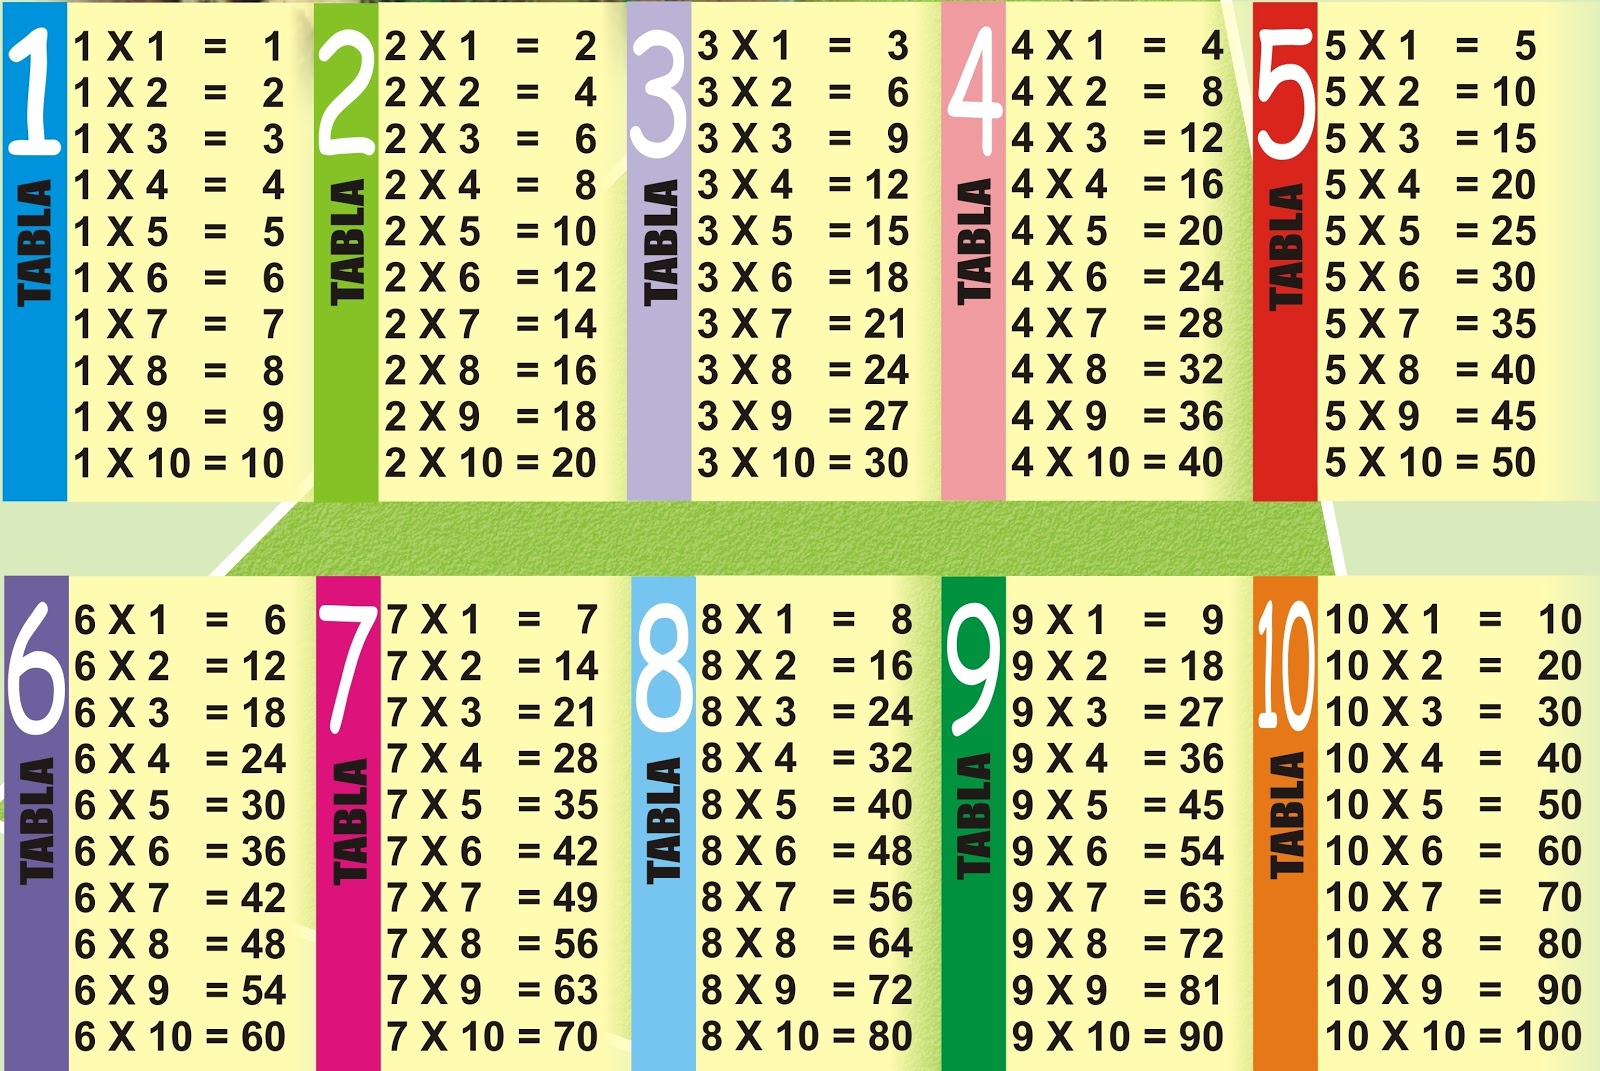 tablas-de-multiplicar-del-1-al-10-tablas – Imagenes Educativas